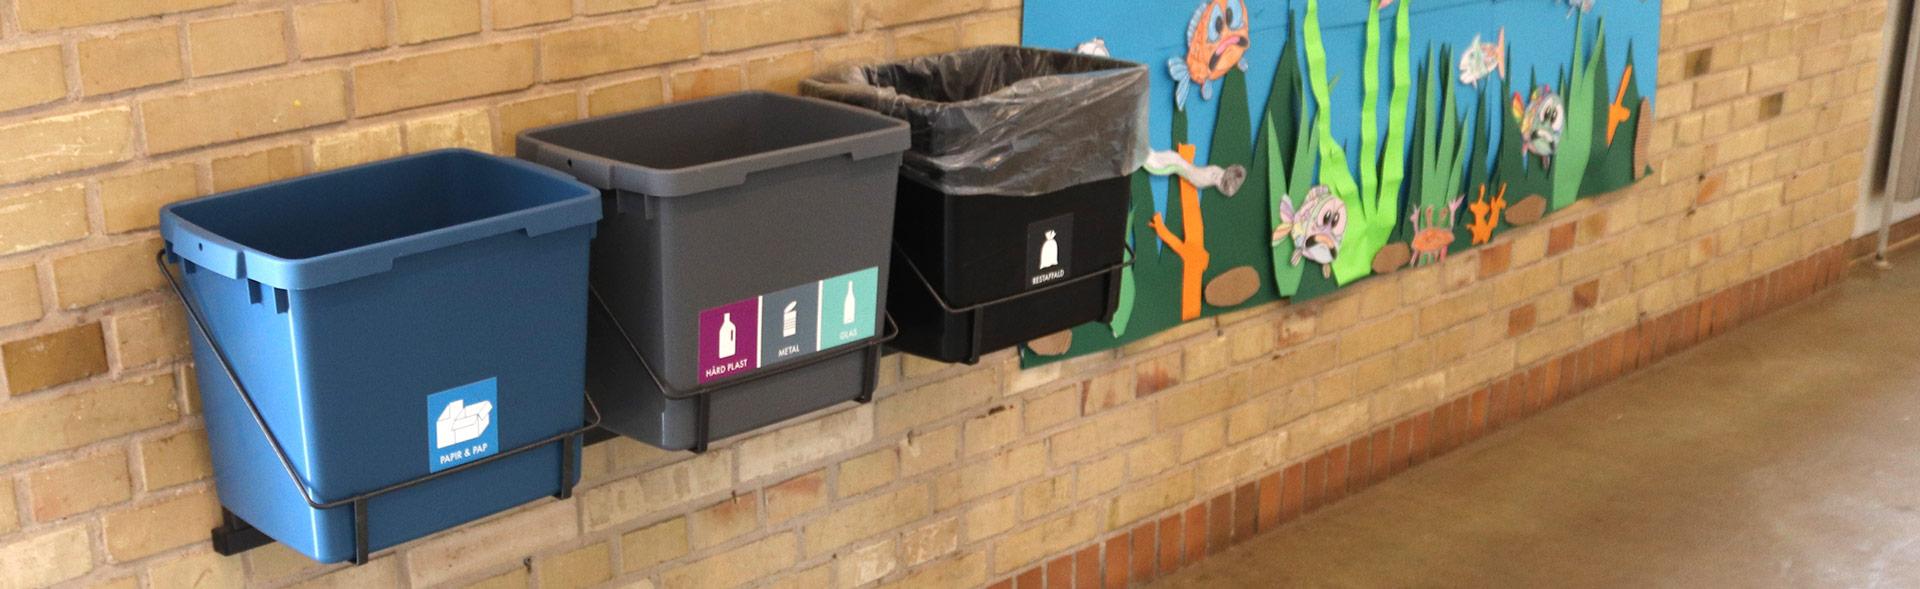 Tre spande til affaldssortering hænger på væg i skole